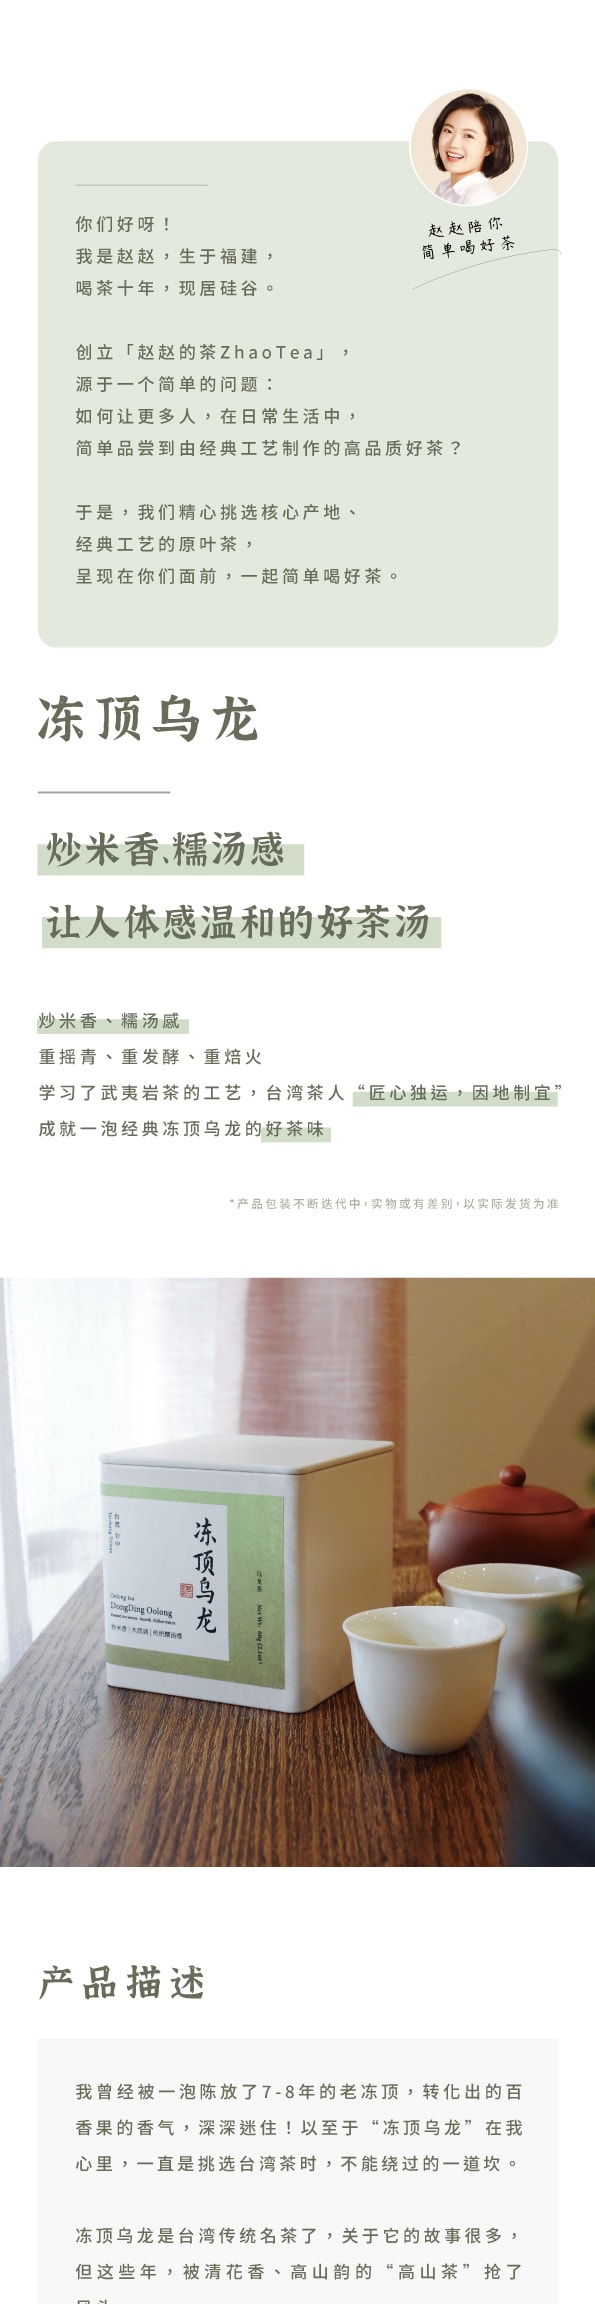 美國 趙趙的茶 ZhaoTea 凍頂烏龍 台灣台中 經典烏龍茶 炒米香 湯感溫和 試飲三連泡 15g (5gx3)